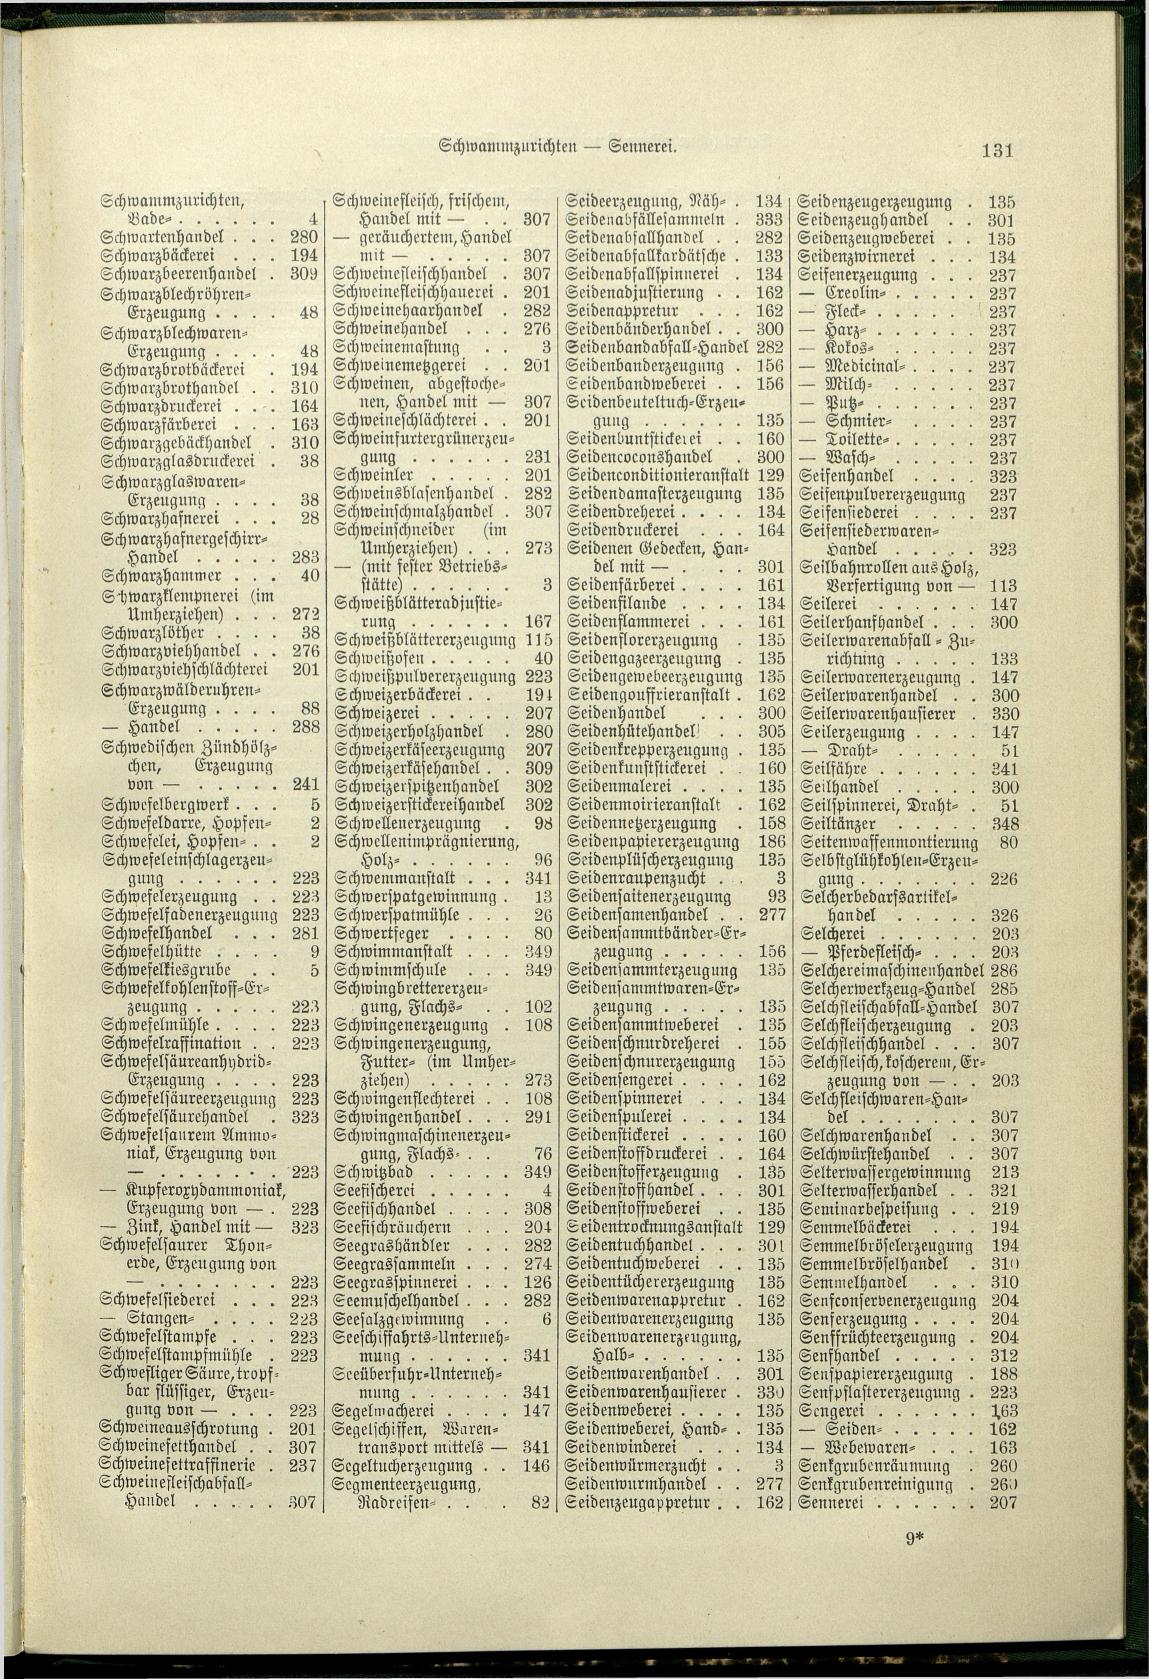 Verzeichnis der Gewerbe der im Reichsrathe vertretenen Königreiche und Länder 1900 - Seite 135